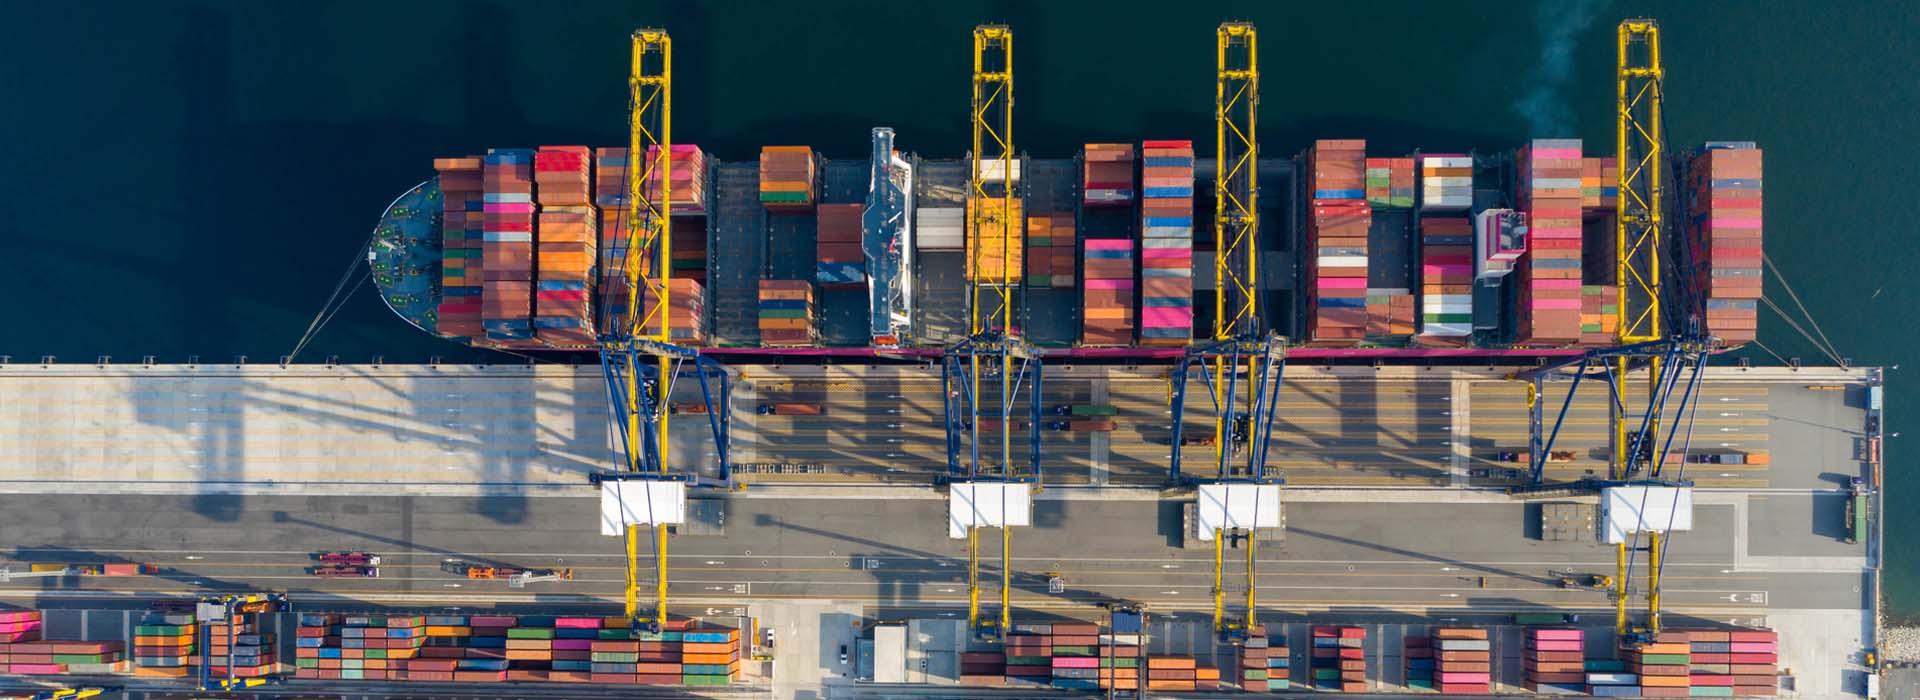 Foto von einem Containerschiff im Hafen, von oben fotografiert